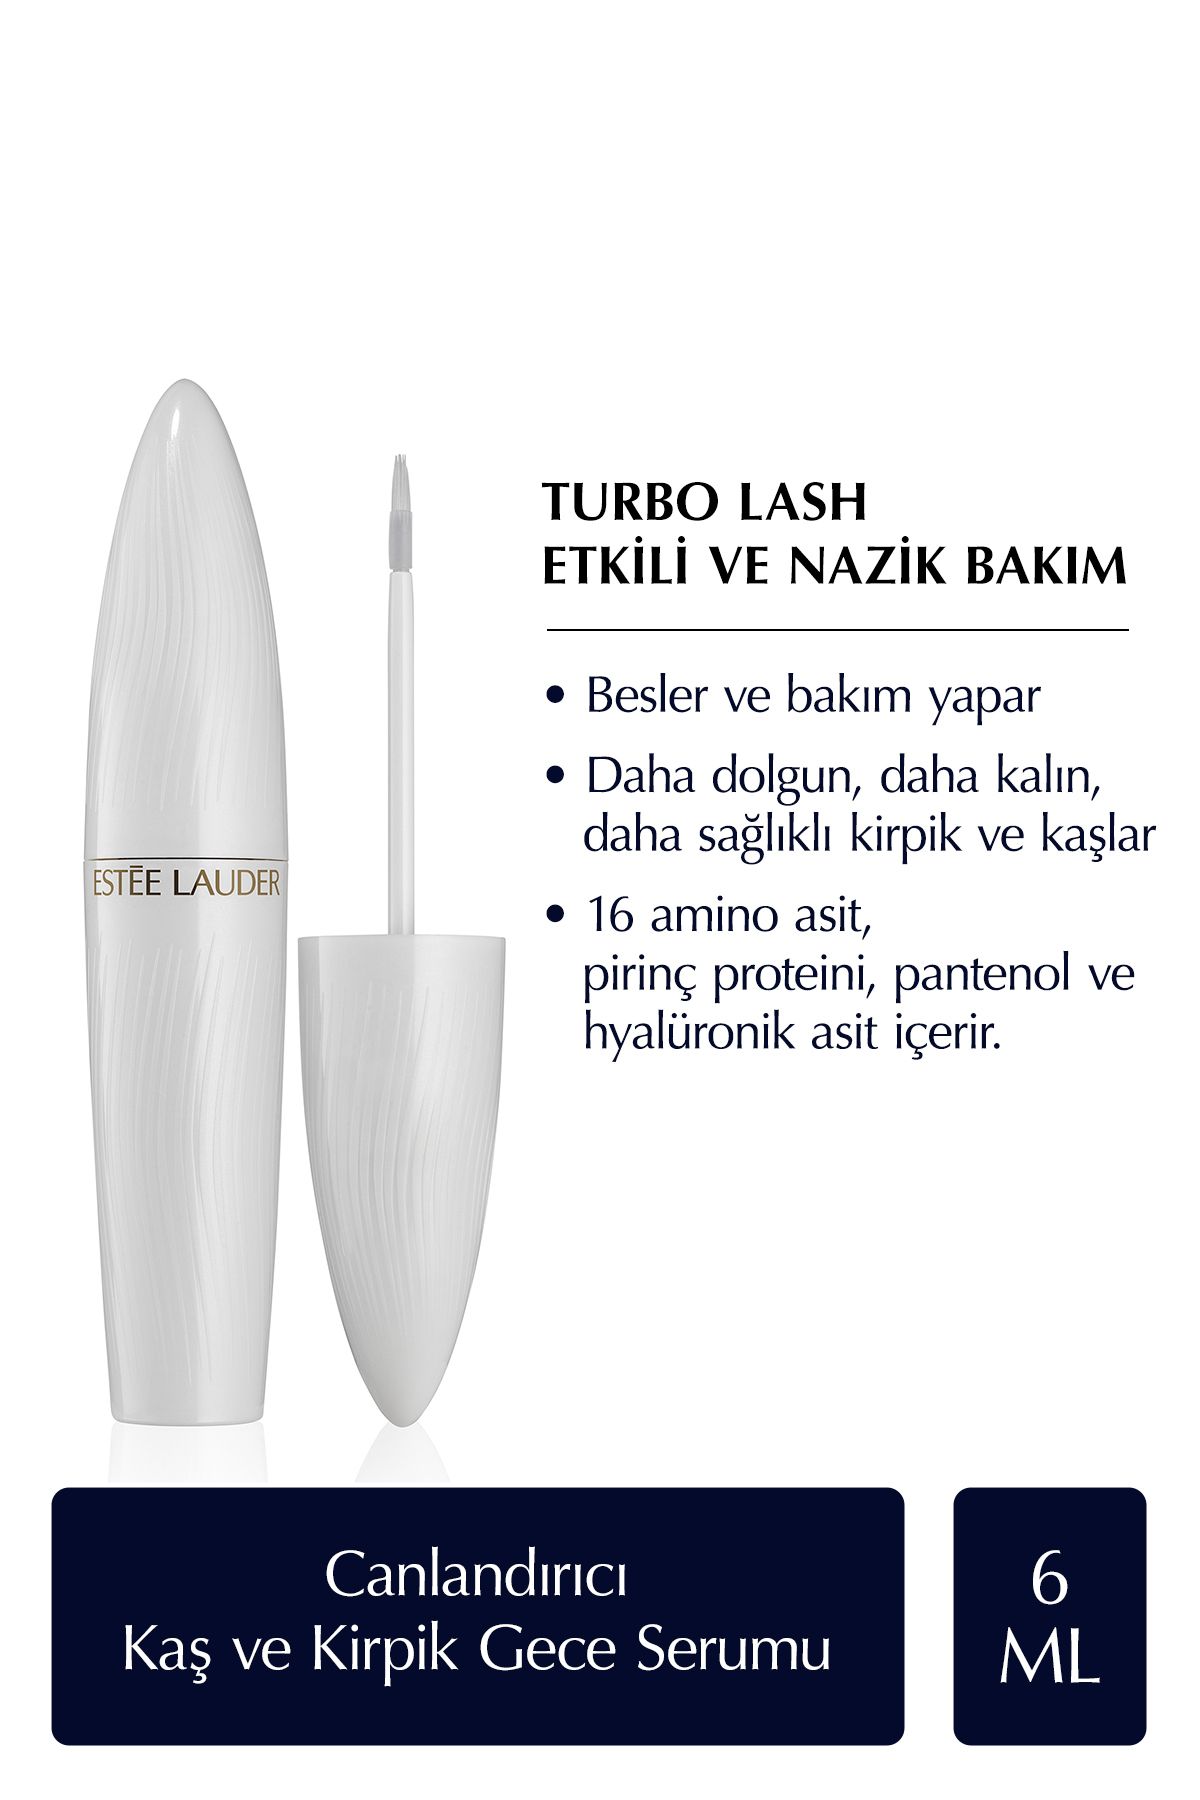 Estee Lauder Turbo Lash Canlandırıcı, Güçlendirici ve Besleyici Kaş ve Kirpik Gece Serumu - 6ml